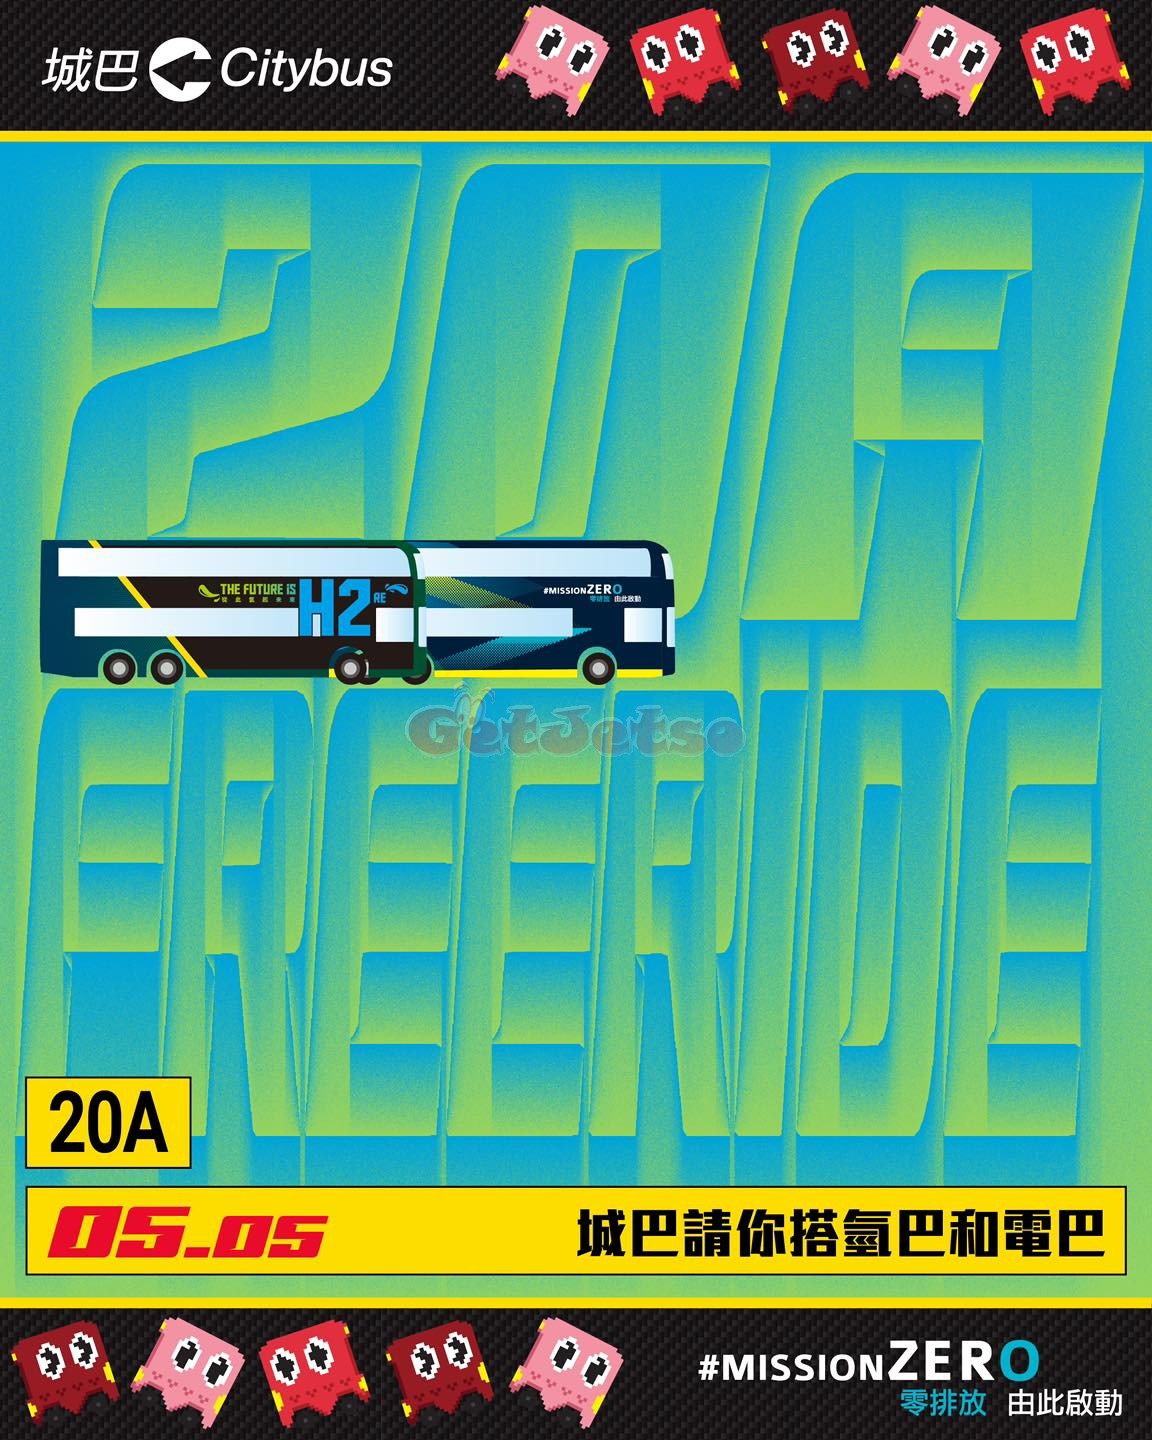 免費乘搭城巴新能源巴士20A「彌敦道線」(24年5月5日)圖片1